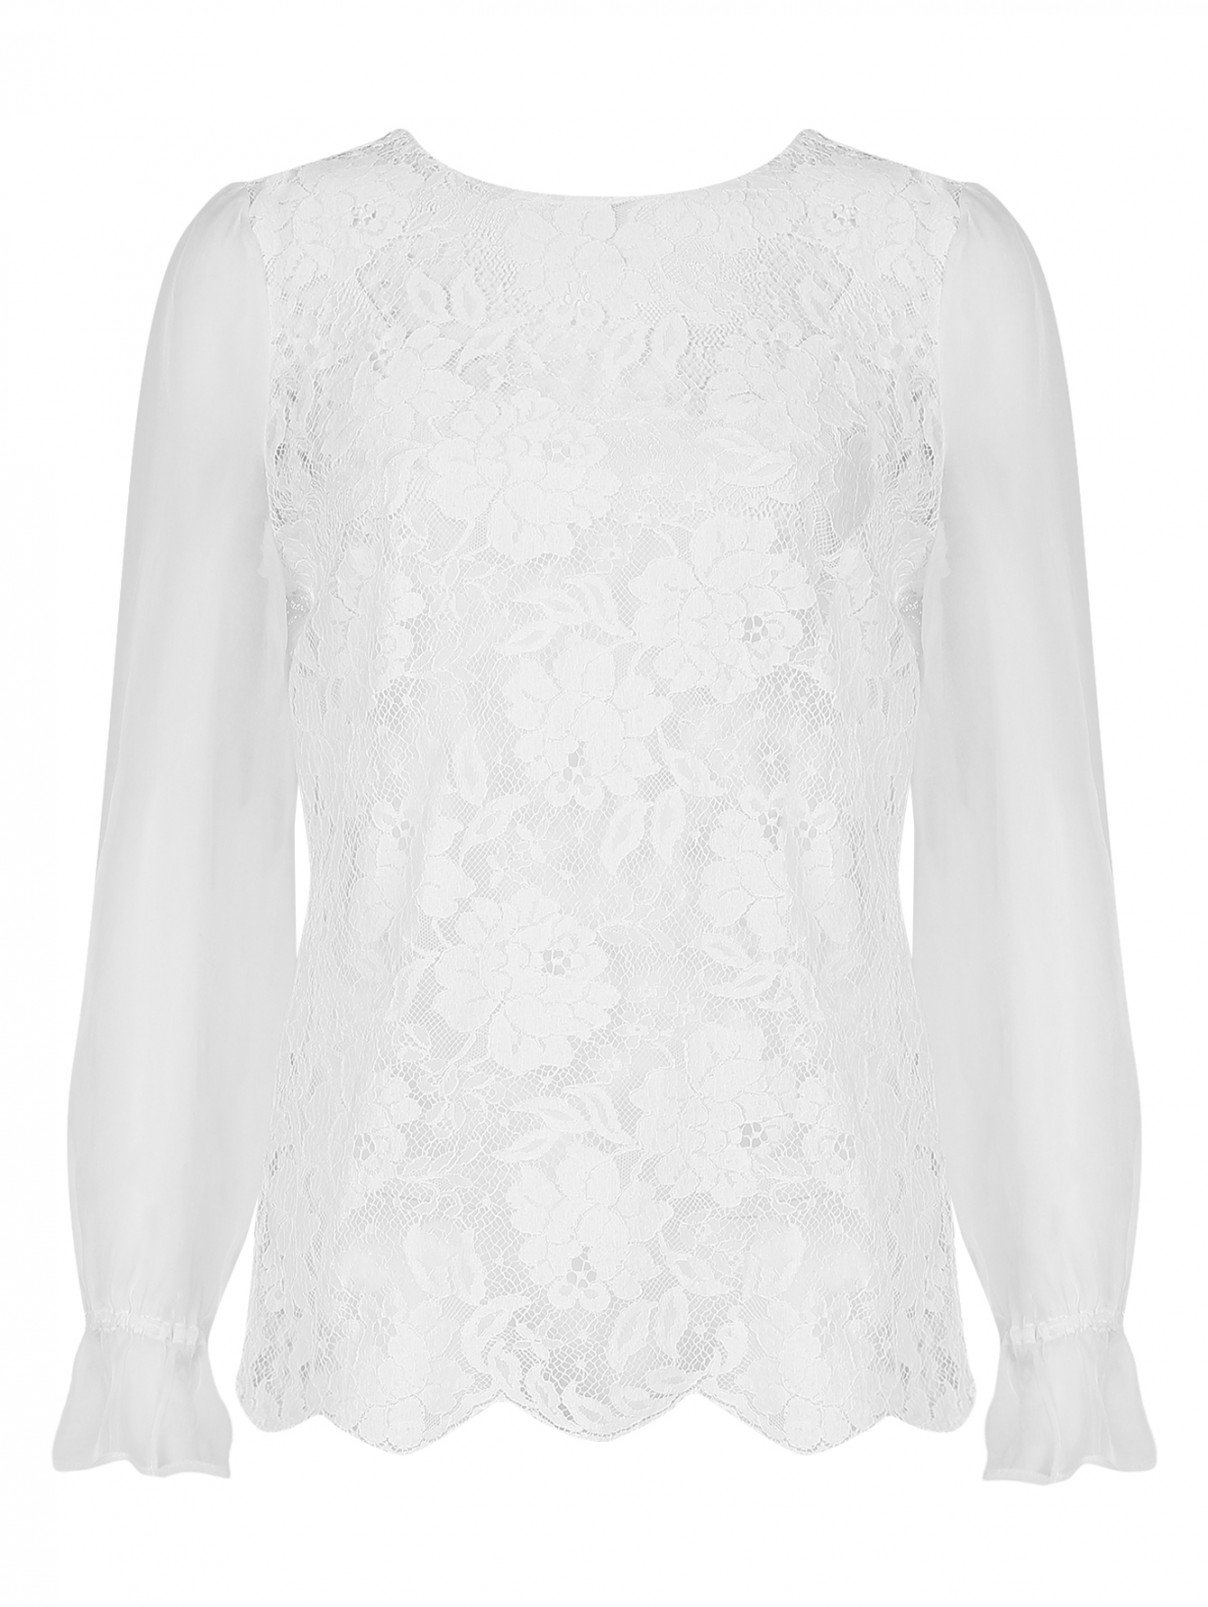 Блуза со вставками из кружева Mary Katrantzou  –  Общий вид  – Цвет:  Белый